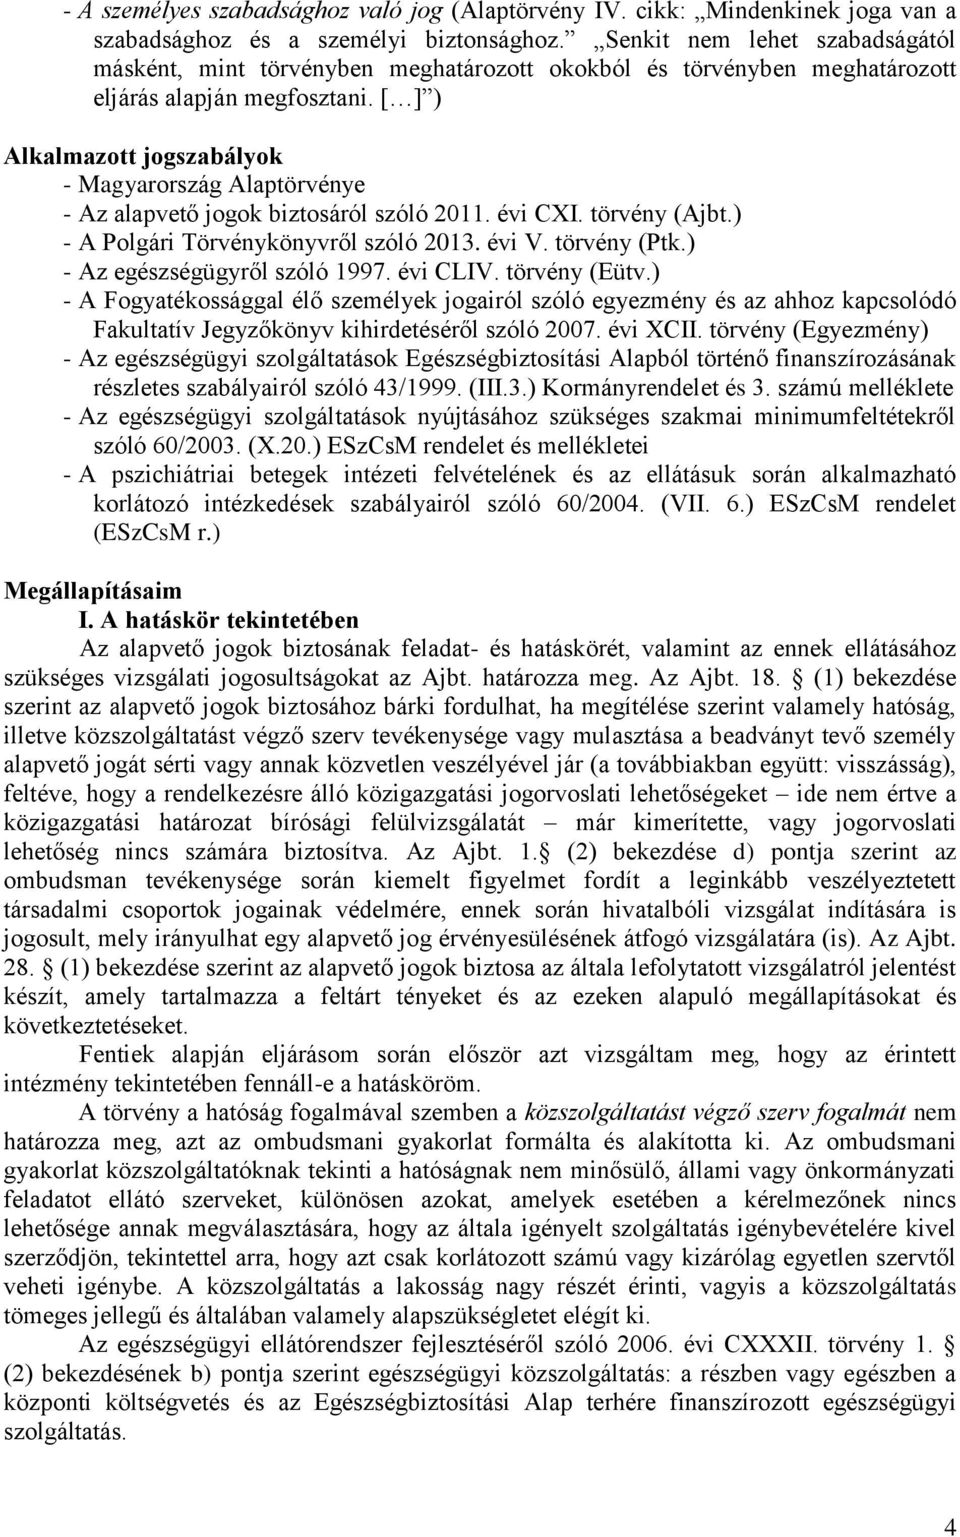 [ ] ) Alkalmazott jogszabályok - Magyarország Alaptörvénye - Az alapvető jogok biztosáról szóló 2011. évi CXI. törvény (Ajbt.) - A Polgári Törvénykönyvről szóló 2013. évi V. törvény (Ptk.